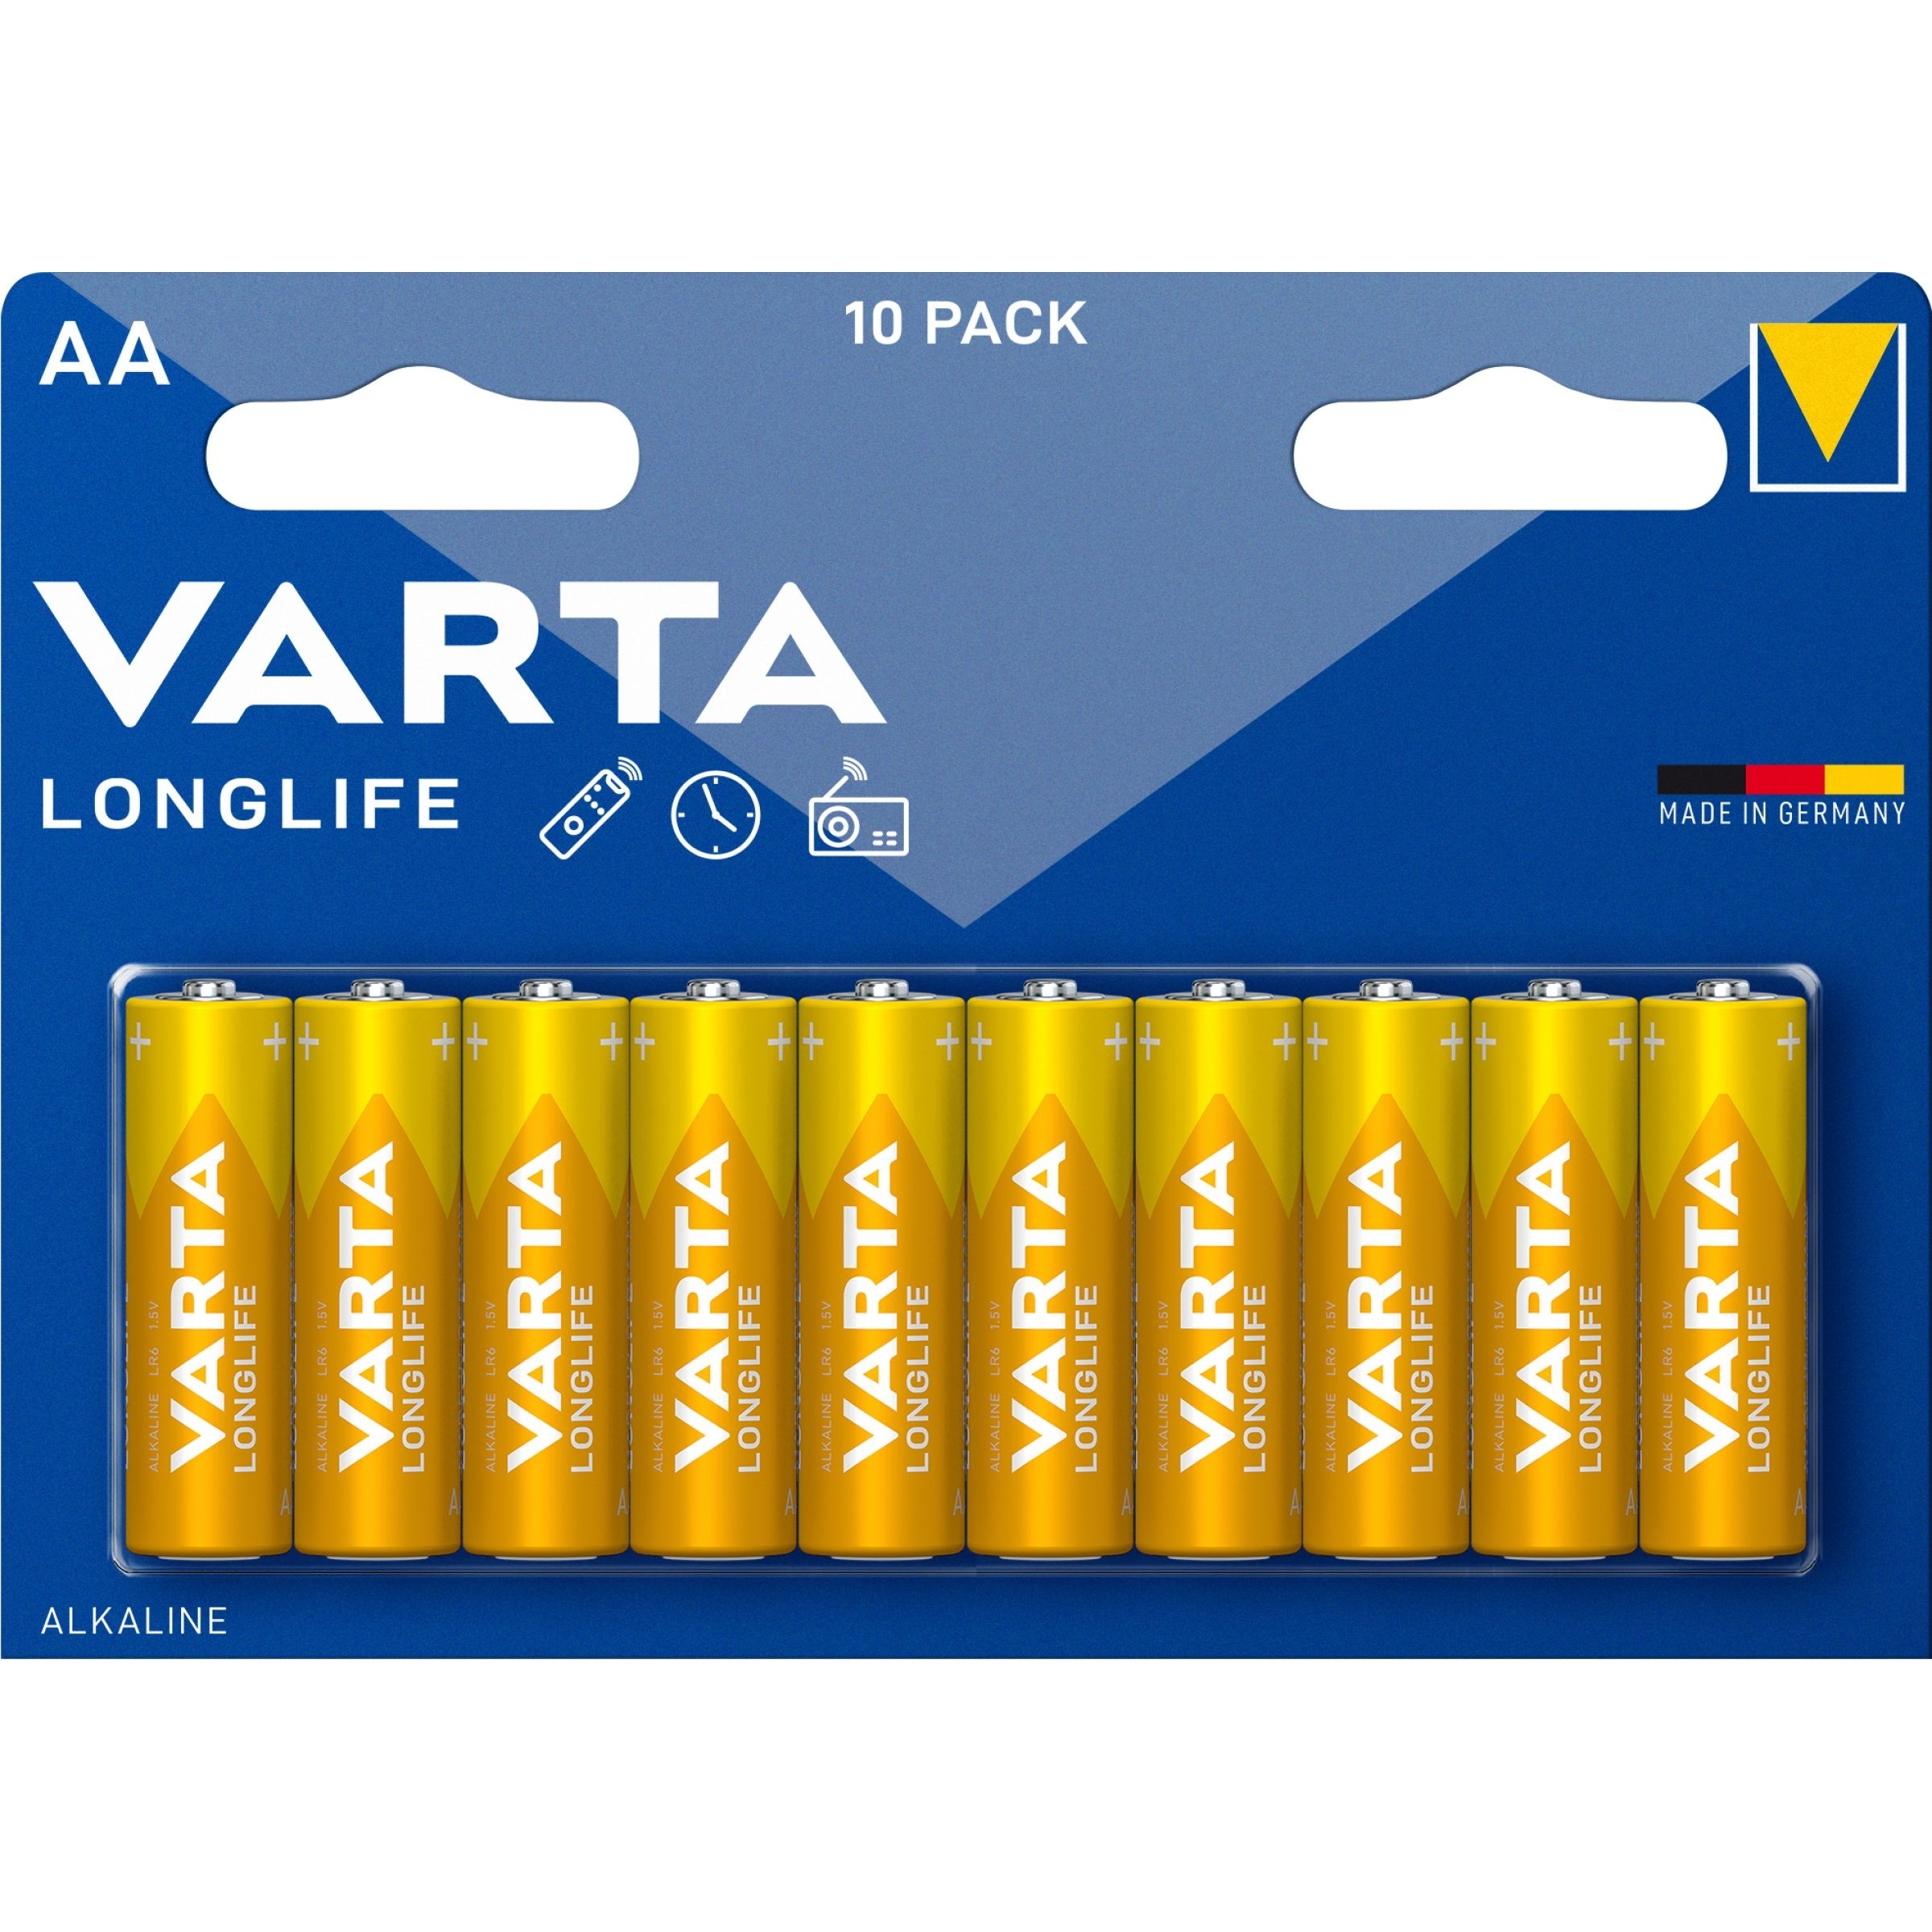 Varta Alkaline Longlife AA Batteries (10 Pack)